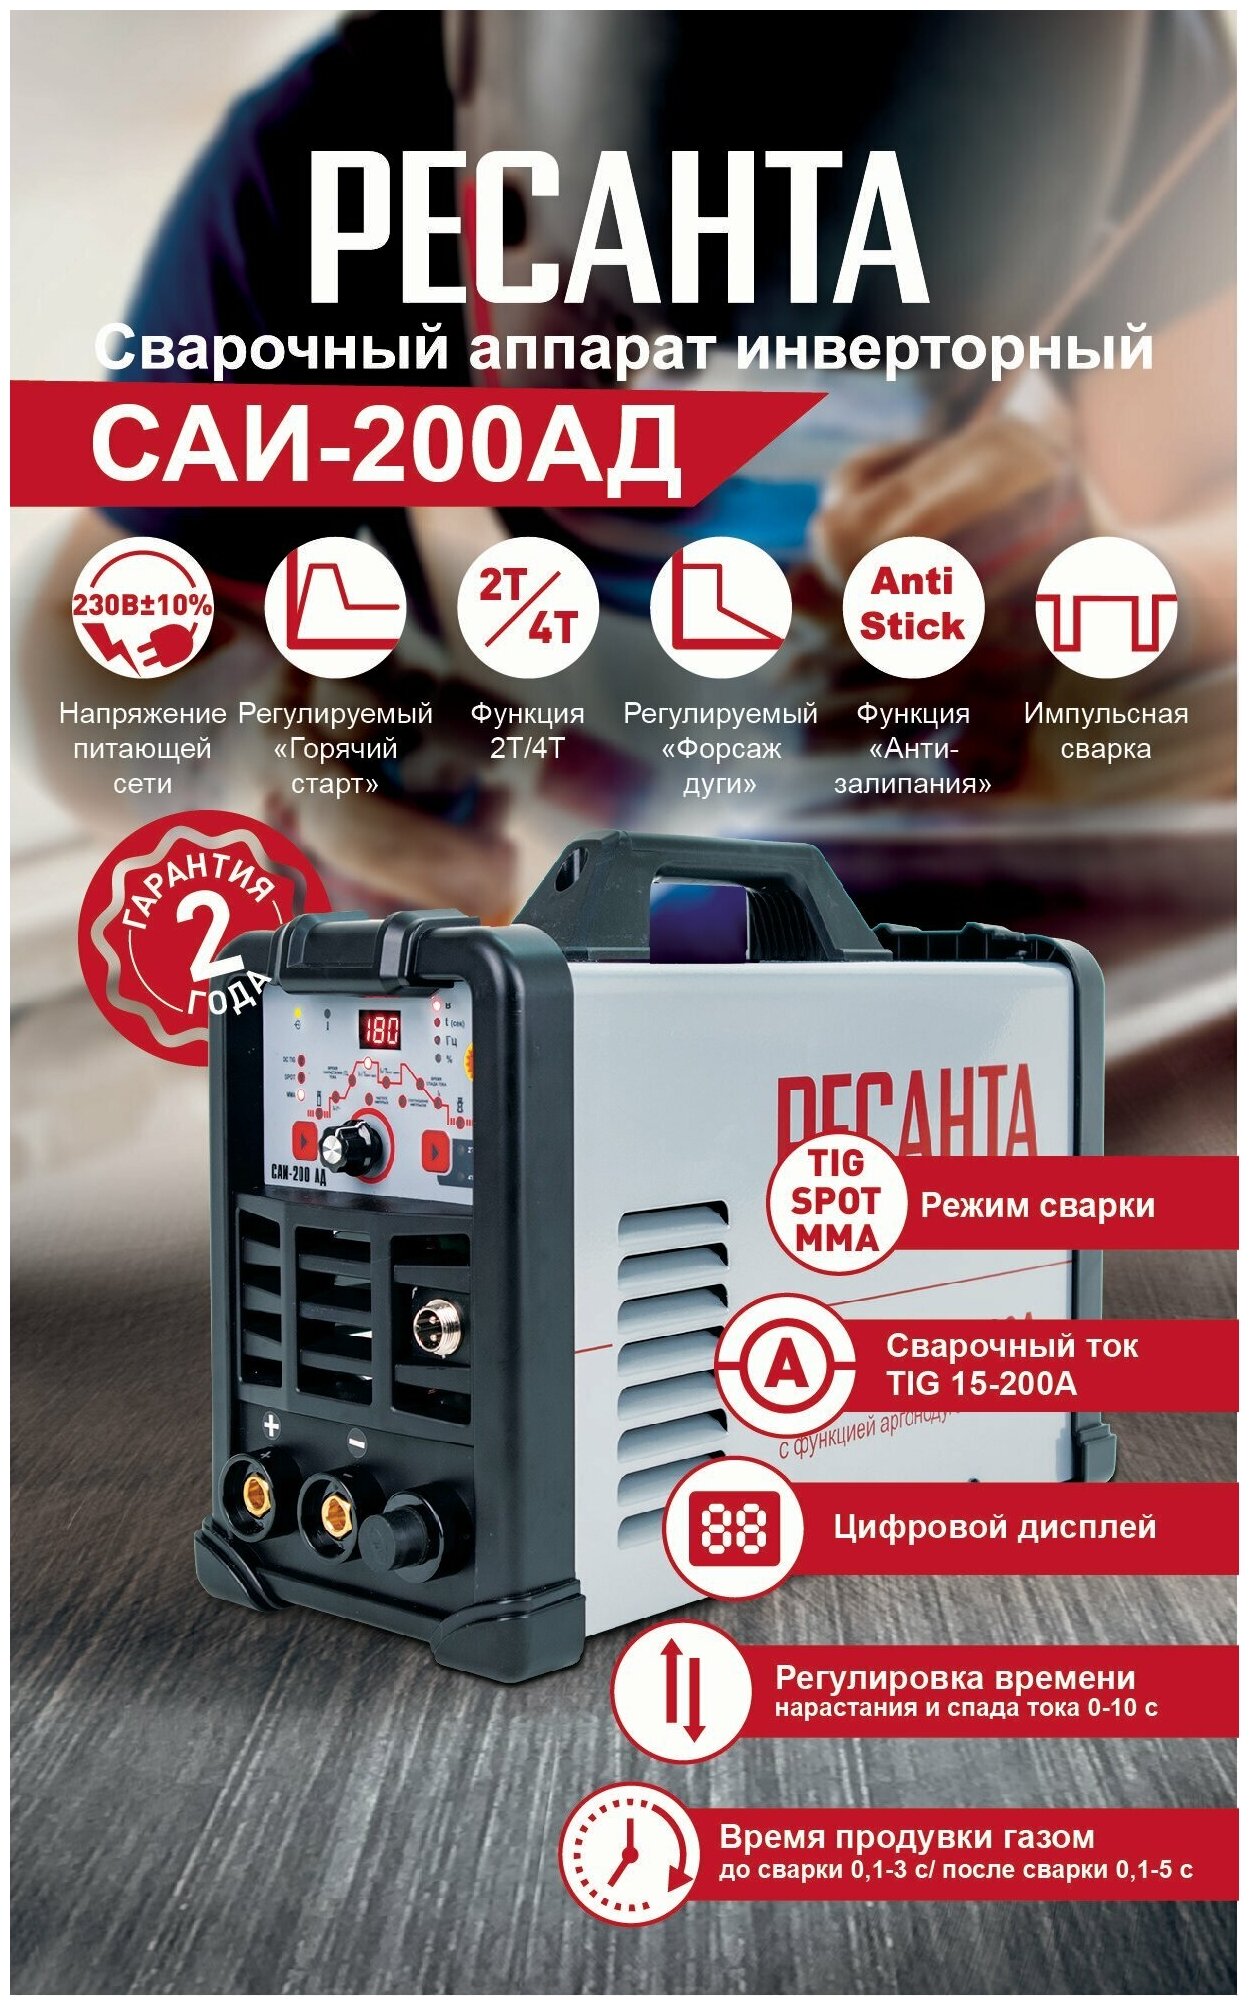 Сварочный аппарат инверторный Ресанта САИ-200АД Ресанта (65/94)